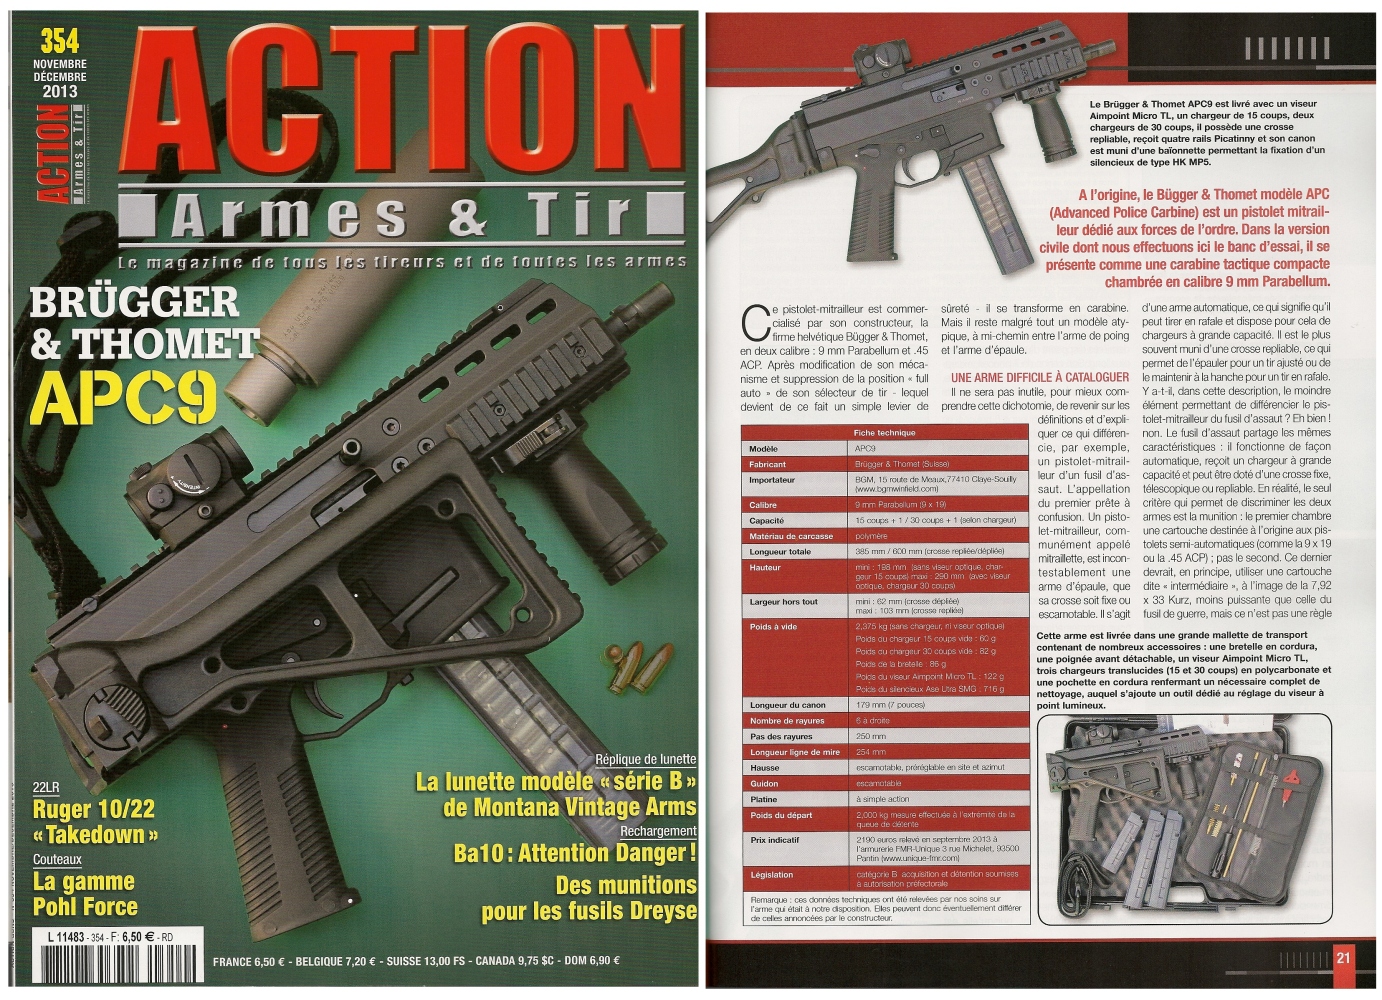 Le banc d’essai du Brügger & Thomet APC9 a été publié sur 8 pages dans le magazine Action Armes & Tir n°354 (novembre-décembre 2013)